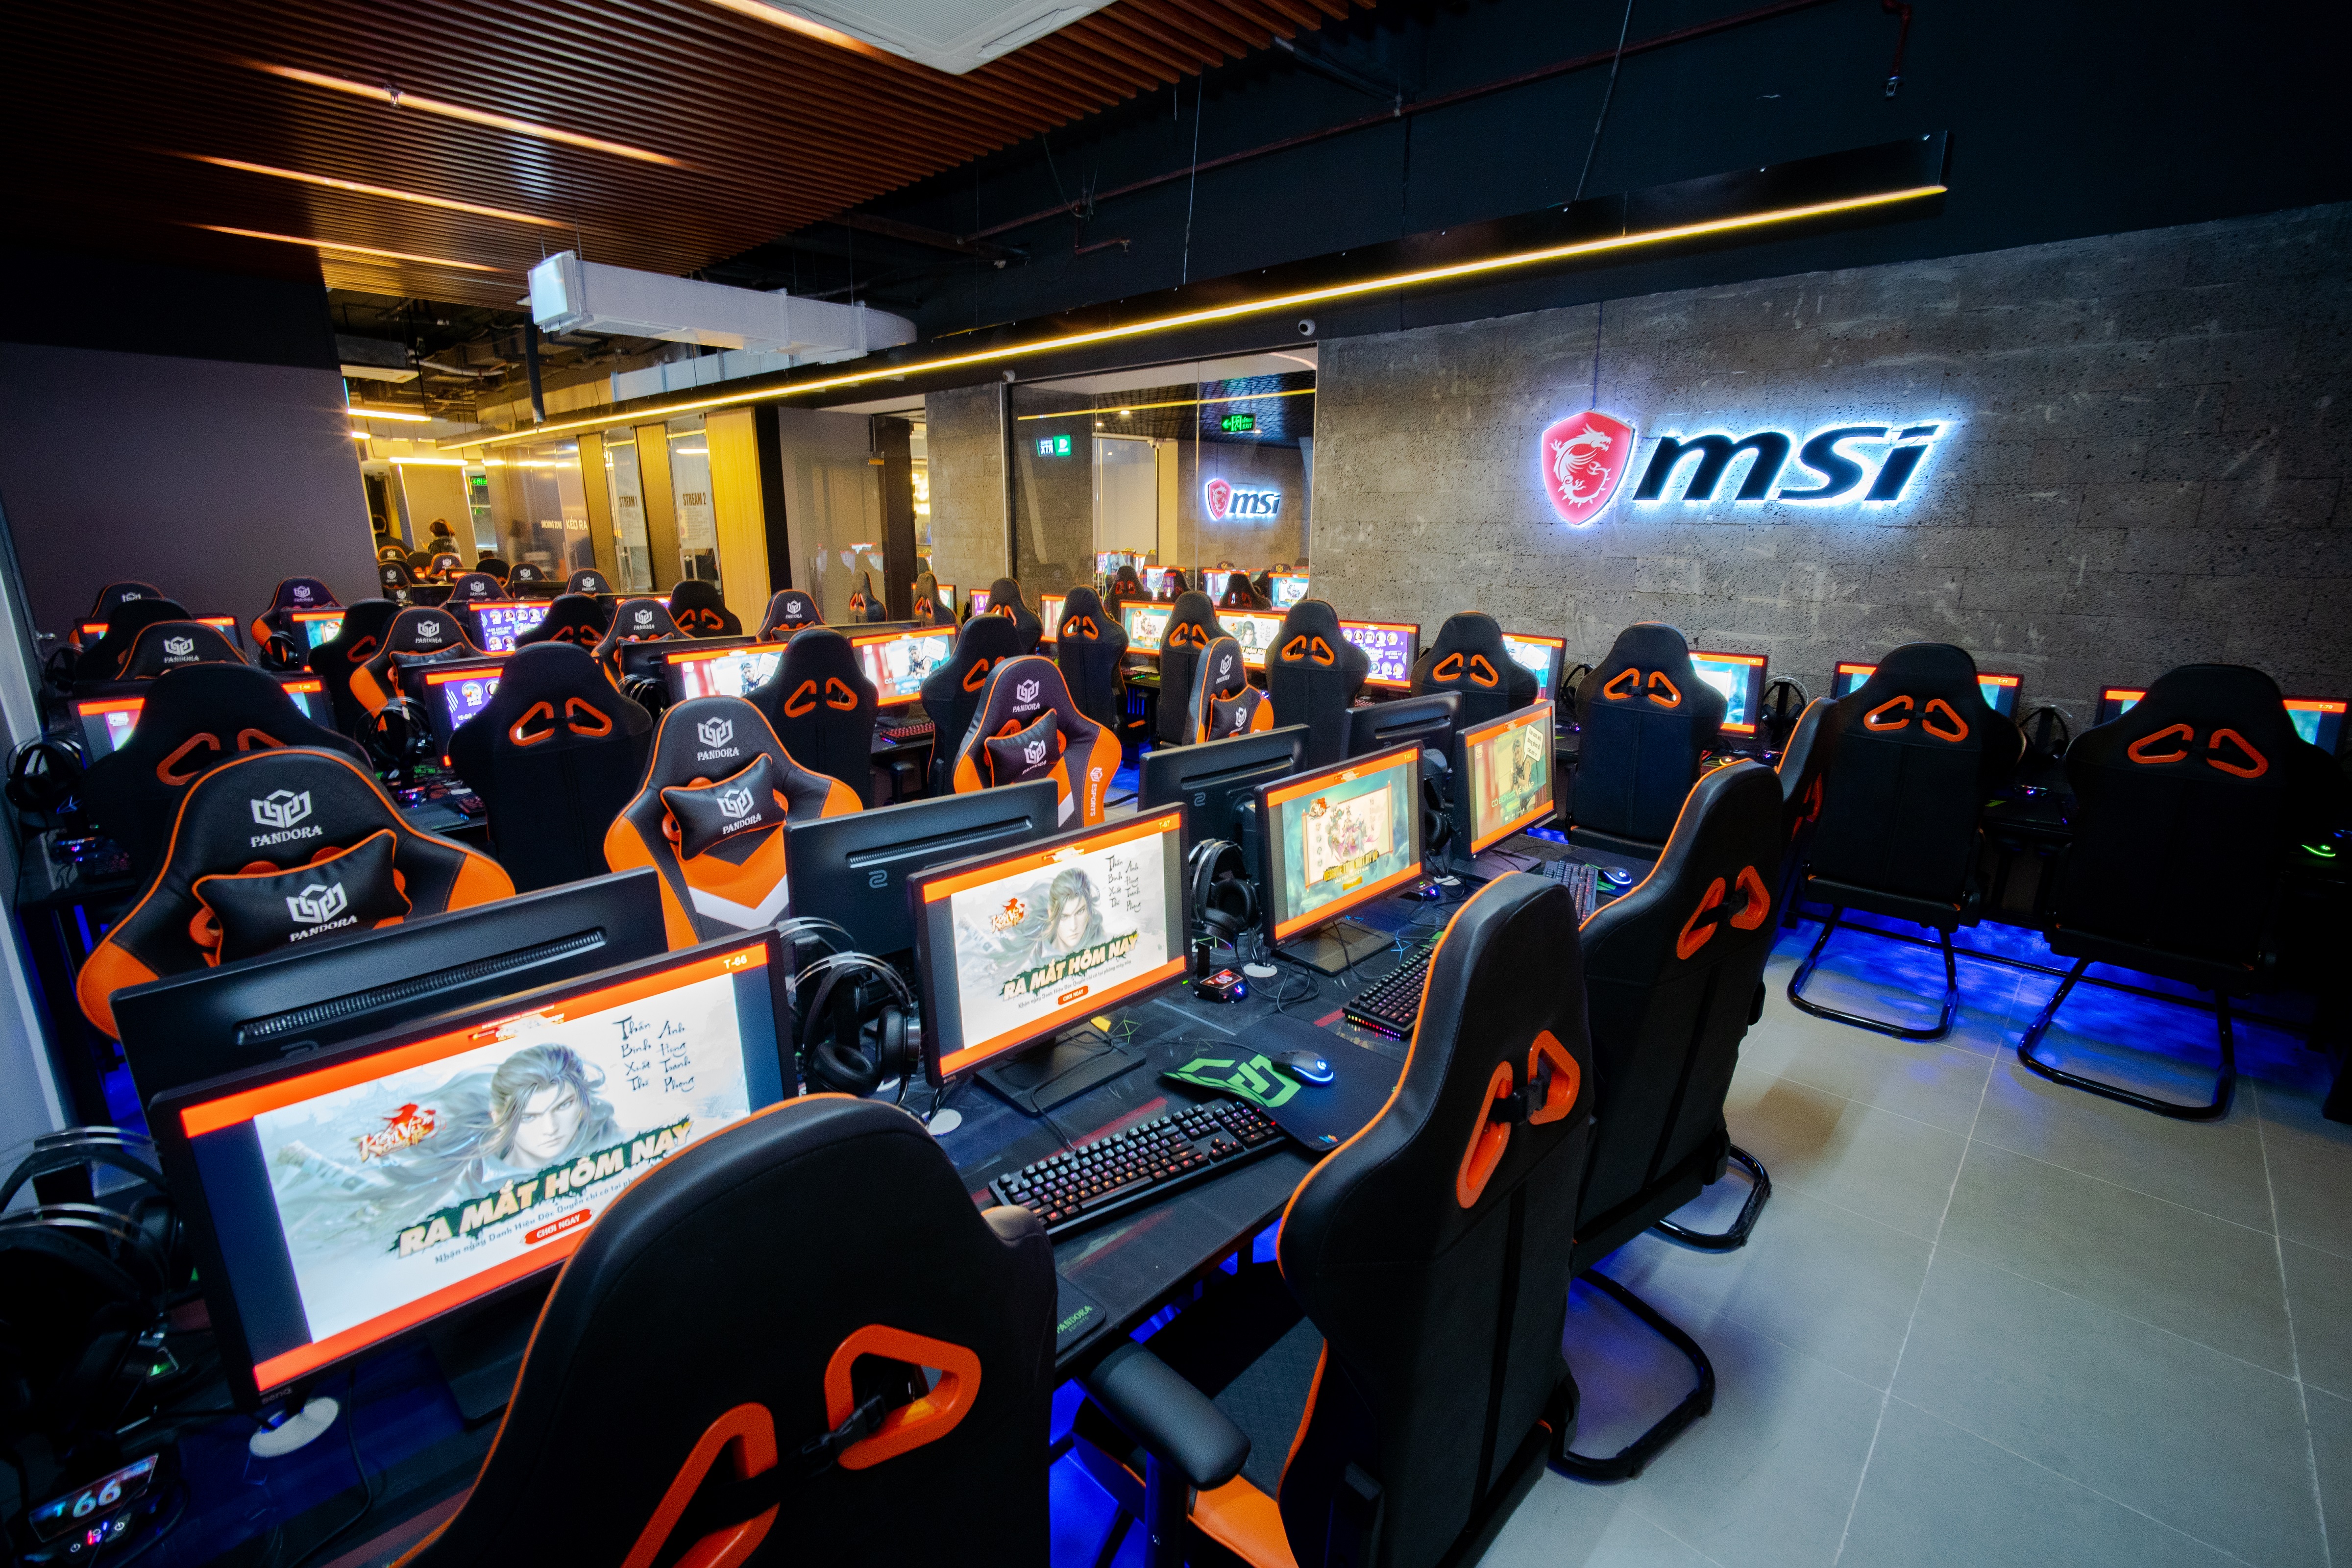 Trải nghiệm không gian chơi game chuyên nghiệp cùng Pandora Gaming Cầu Giấy - Tổ hợp giải trí đa nội dung tiêu chuẩn quốc tế tại Hà Nội